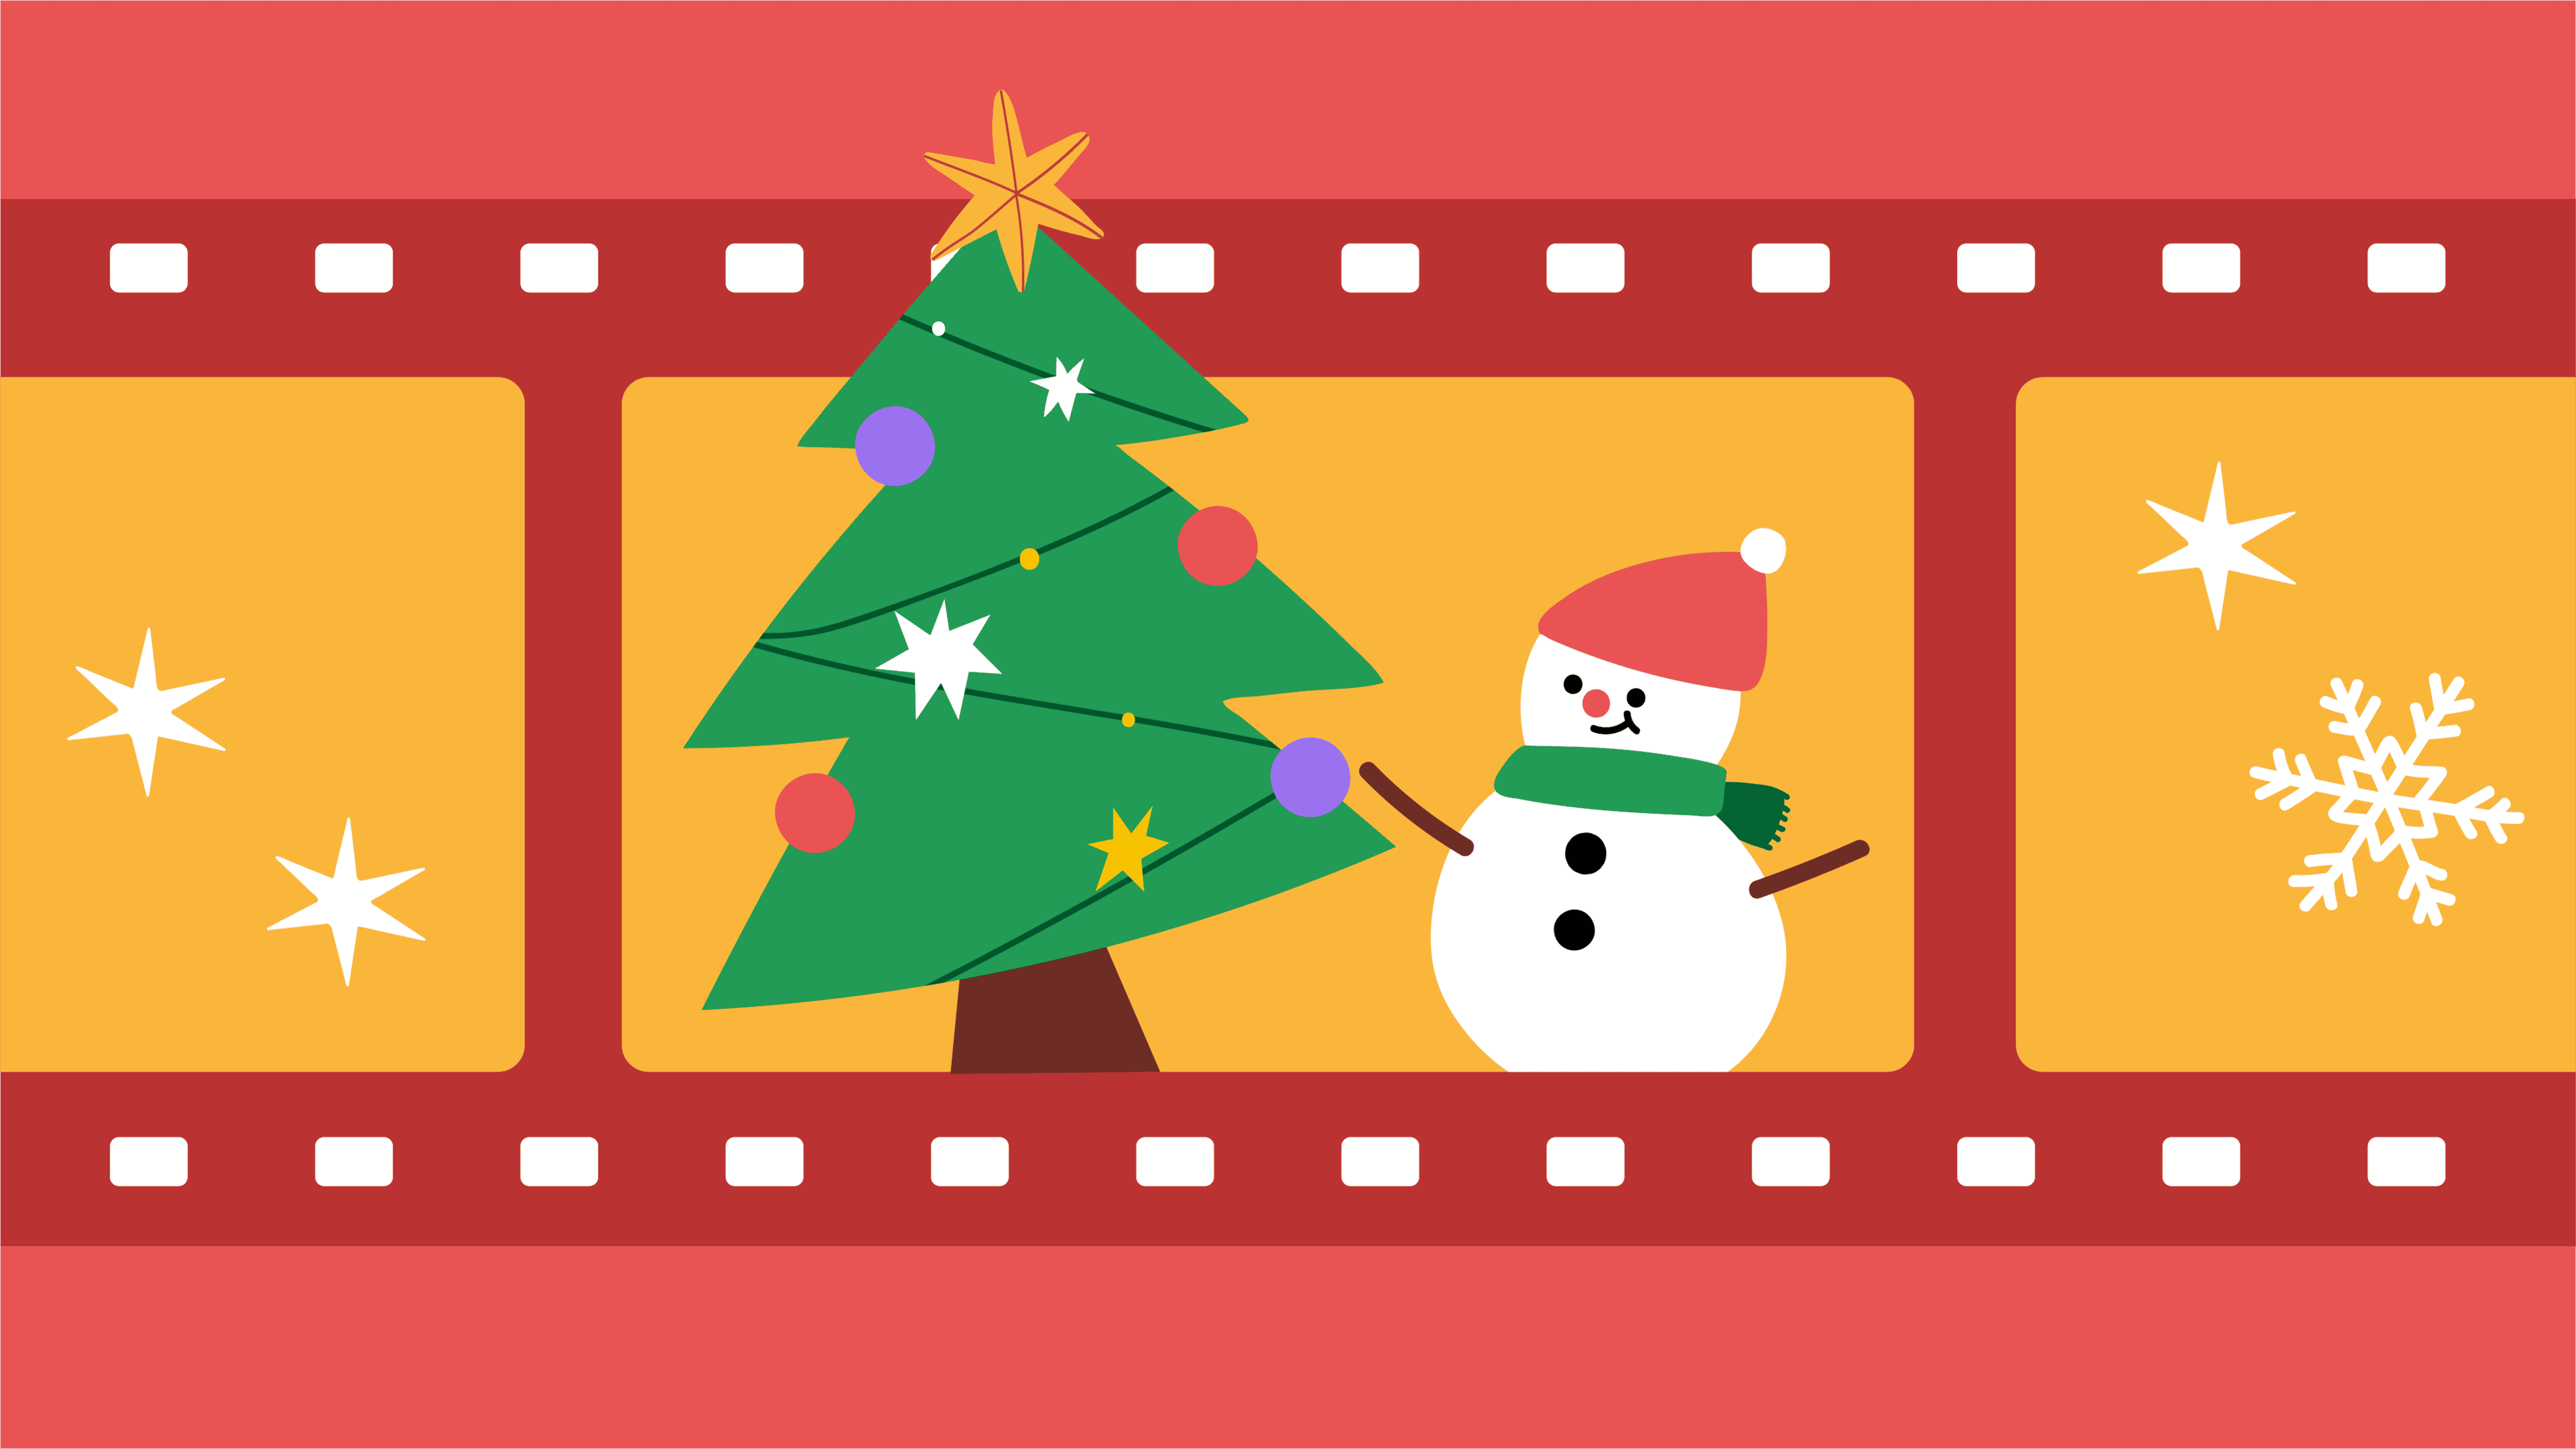 Christmas Movie Quiz 2021: Dawb download tau + Sib tham sib Software (20 nqe lus nug)